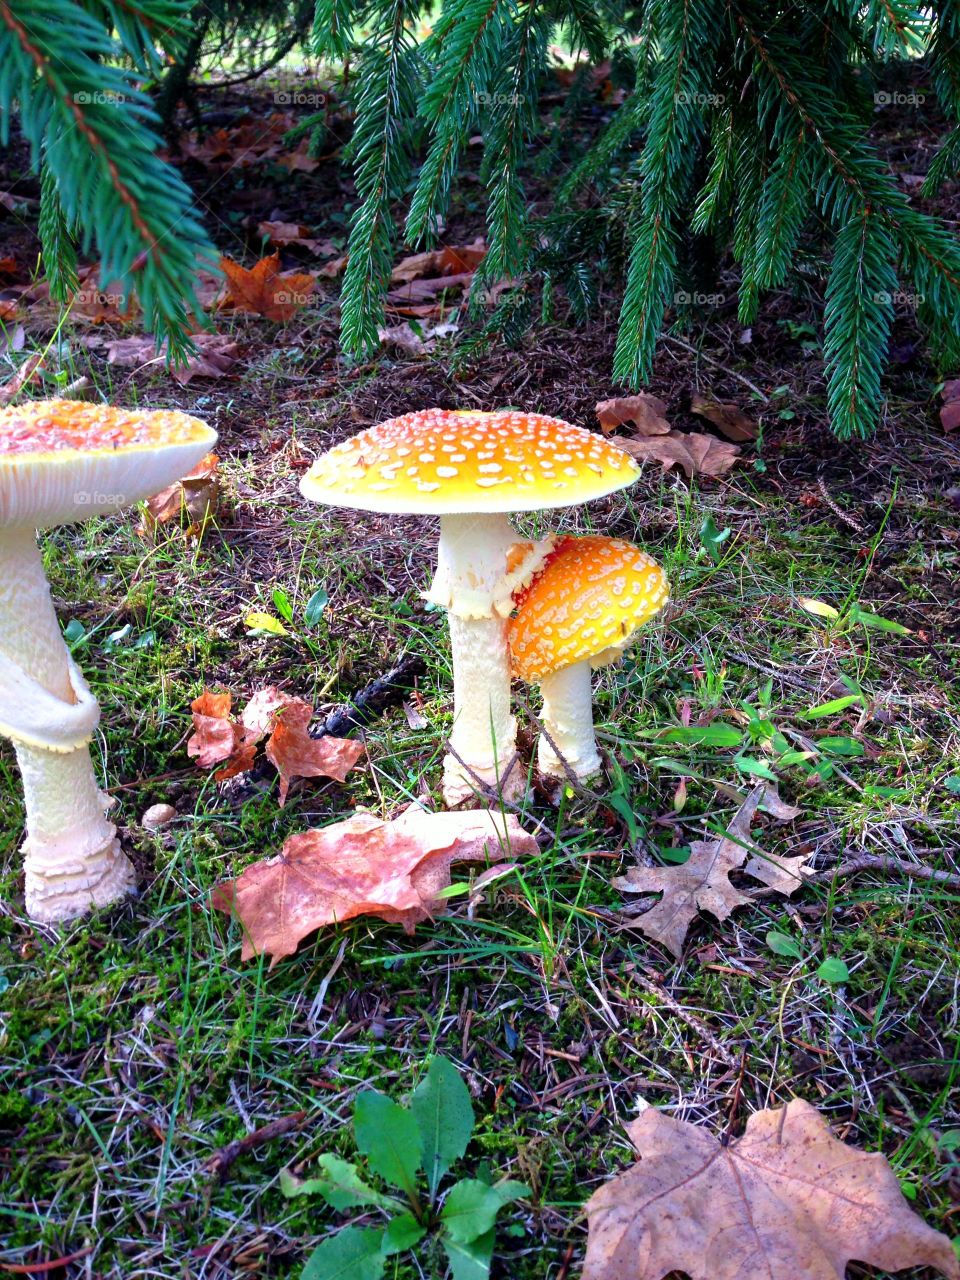 Whimsical Mushroom. Wild mushroom